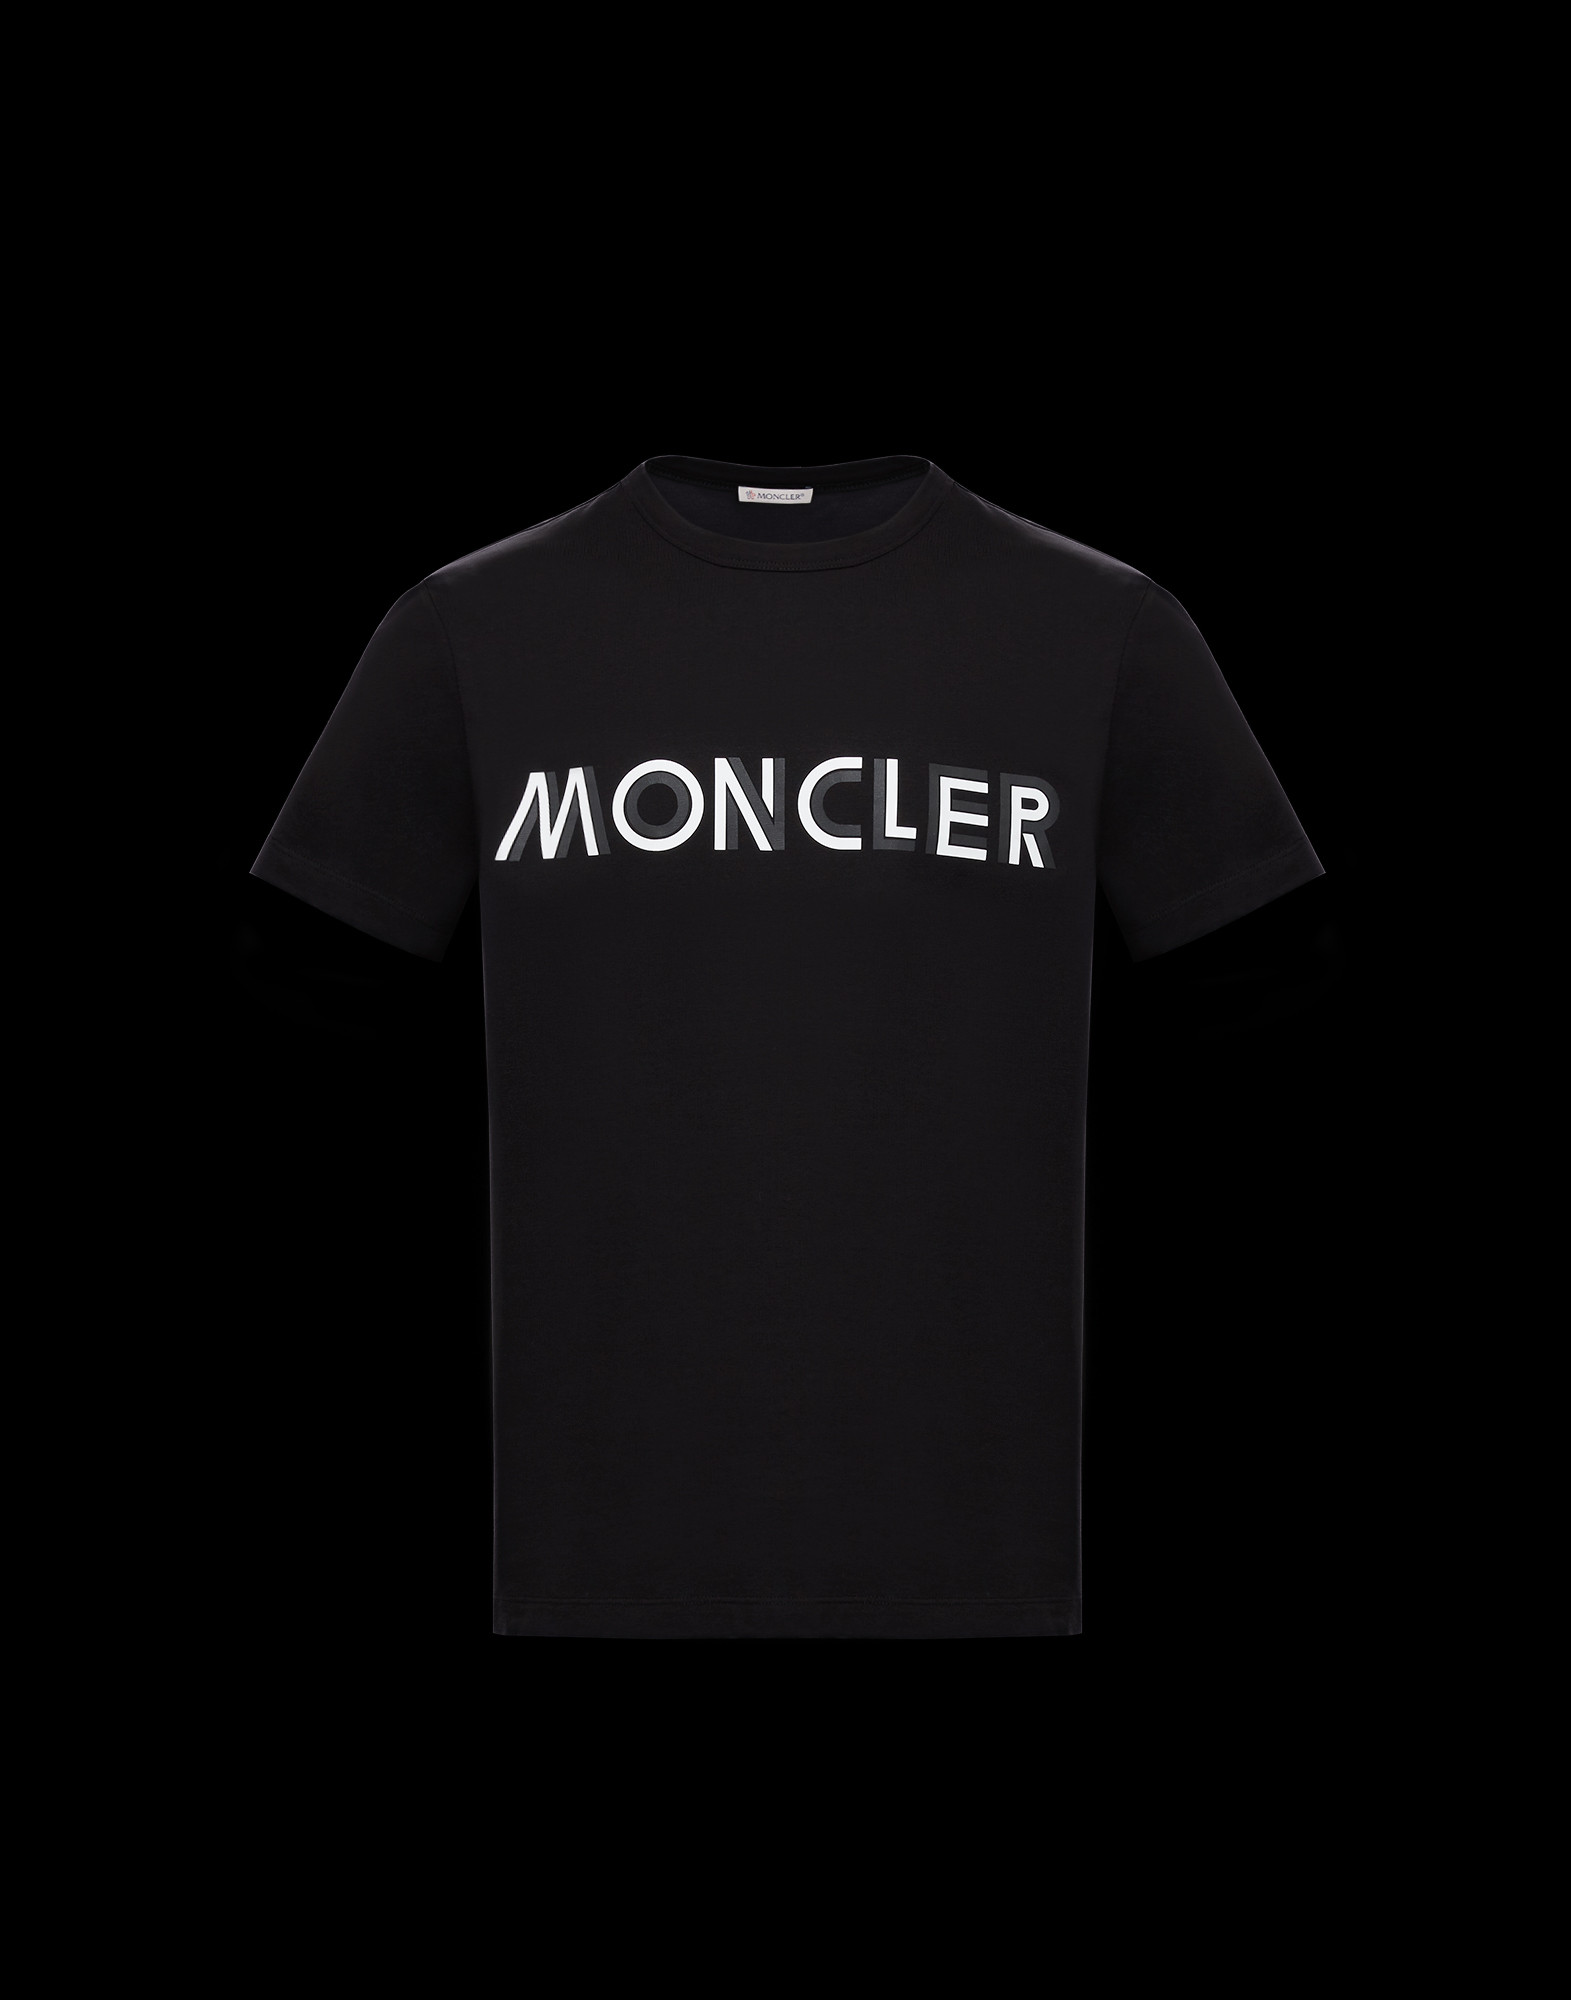 moncler t-shirt cheap